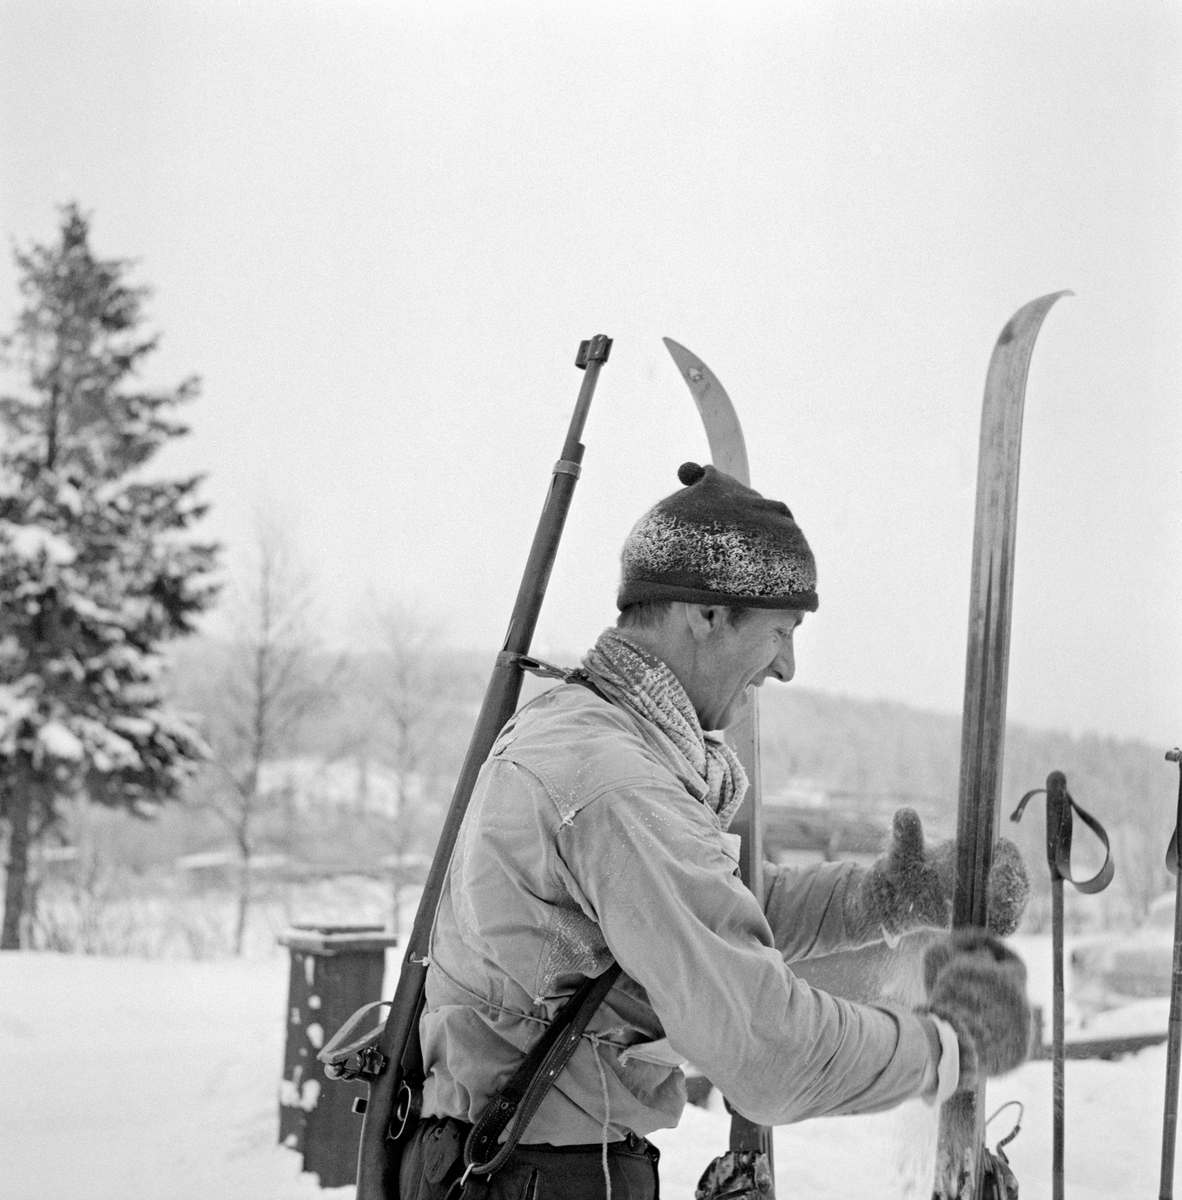 Fra det første offisielle kretsmesterskapet i skiskyting, som ble arrangert på Rasta ved Kongsvinger 8. januar 1961.  Rennet gikk i bitende vinterkulde, det skal ha vært 29 kuldegrader da de 22 påmeldte løperne ble oppropt før start. Løypa var 8-9 kilometer lang og hadde fire standplasser, der det ble skutt på ulike hold (250, 150, 200 og 100 meter).  På dette fotografiet ser vi Arvid Nyberg (1928-2022) fra Trysil sette fra seg ski og staver. Han var kledd i en lys anorakk.  På hodet hadde han ei rimete topplue og hendene var bare i kulda, rundt halsen et skjerf og på hendene et par digre ullvotter. Trysil-løperen fikk nest beste langrennstid i klasse A, men endte på sjetteplass fordi han bare traff 7 av 20 blinker i dette rennet. Nyberg var lagkamerat med toppløperen Hallgeir Brenden (1929-2007), og var med på å vinne tre stafettgull i langrenn for Vestre Trysil idrettsforening.  Gjennom idretten kom han også inn i organisasjonslivet, og derfra kom han med i lokalpolitikken.  Arbeiderpartimannen Arvid Nyberg var ordfører i Trysil fra 1972 til 1999, altså i 27 år.  Han har seinere hatt et organisatorisk engasjement i Hedmark Jeger- og Fiskerforening.